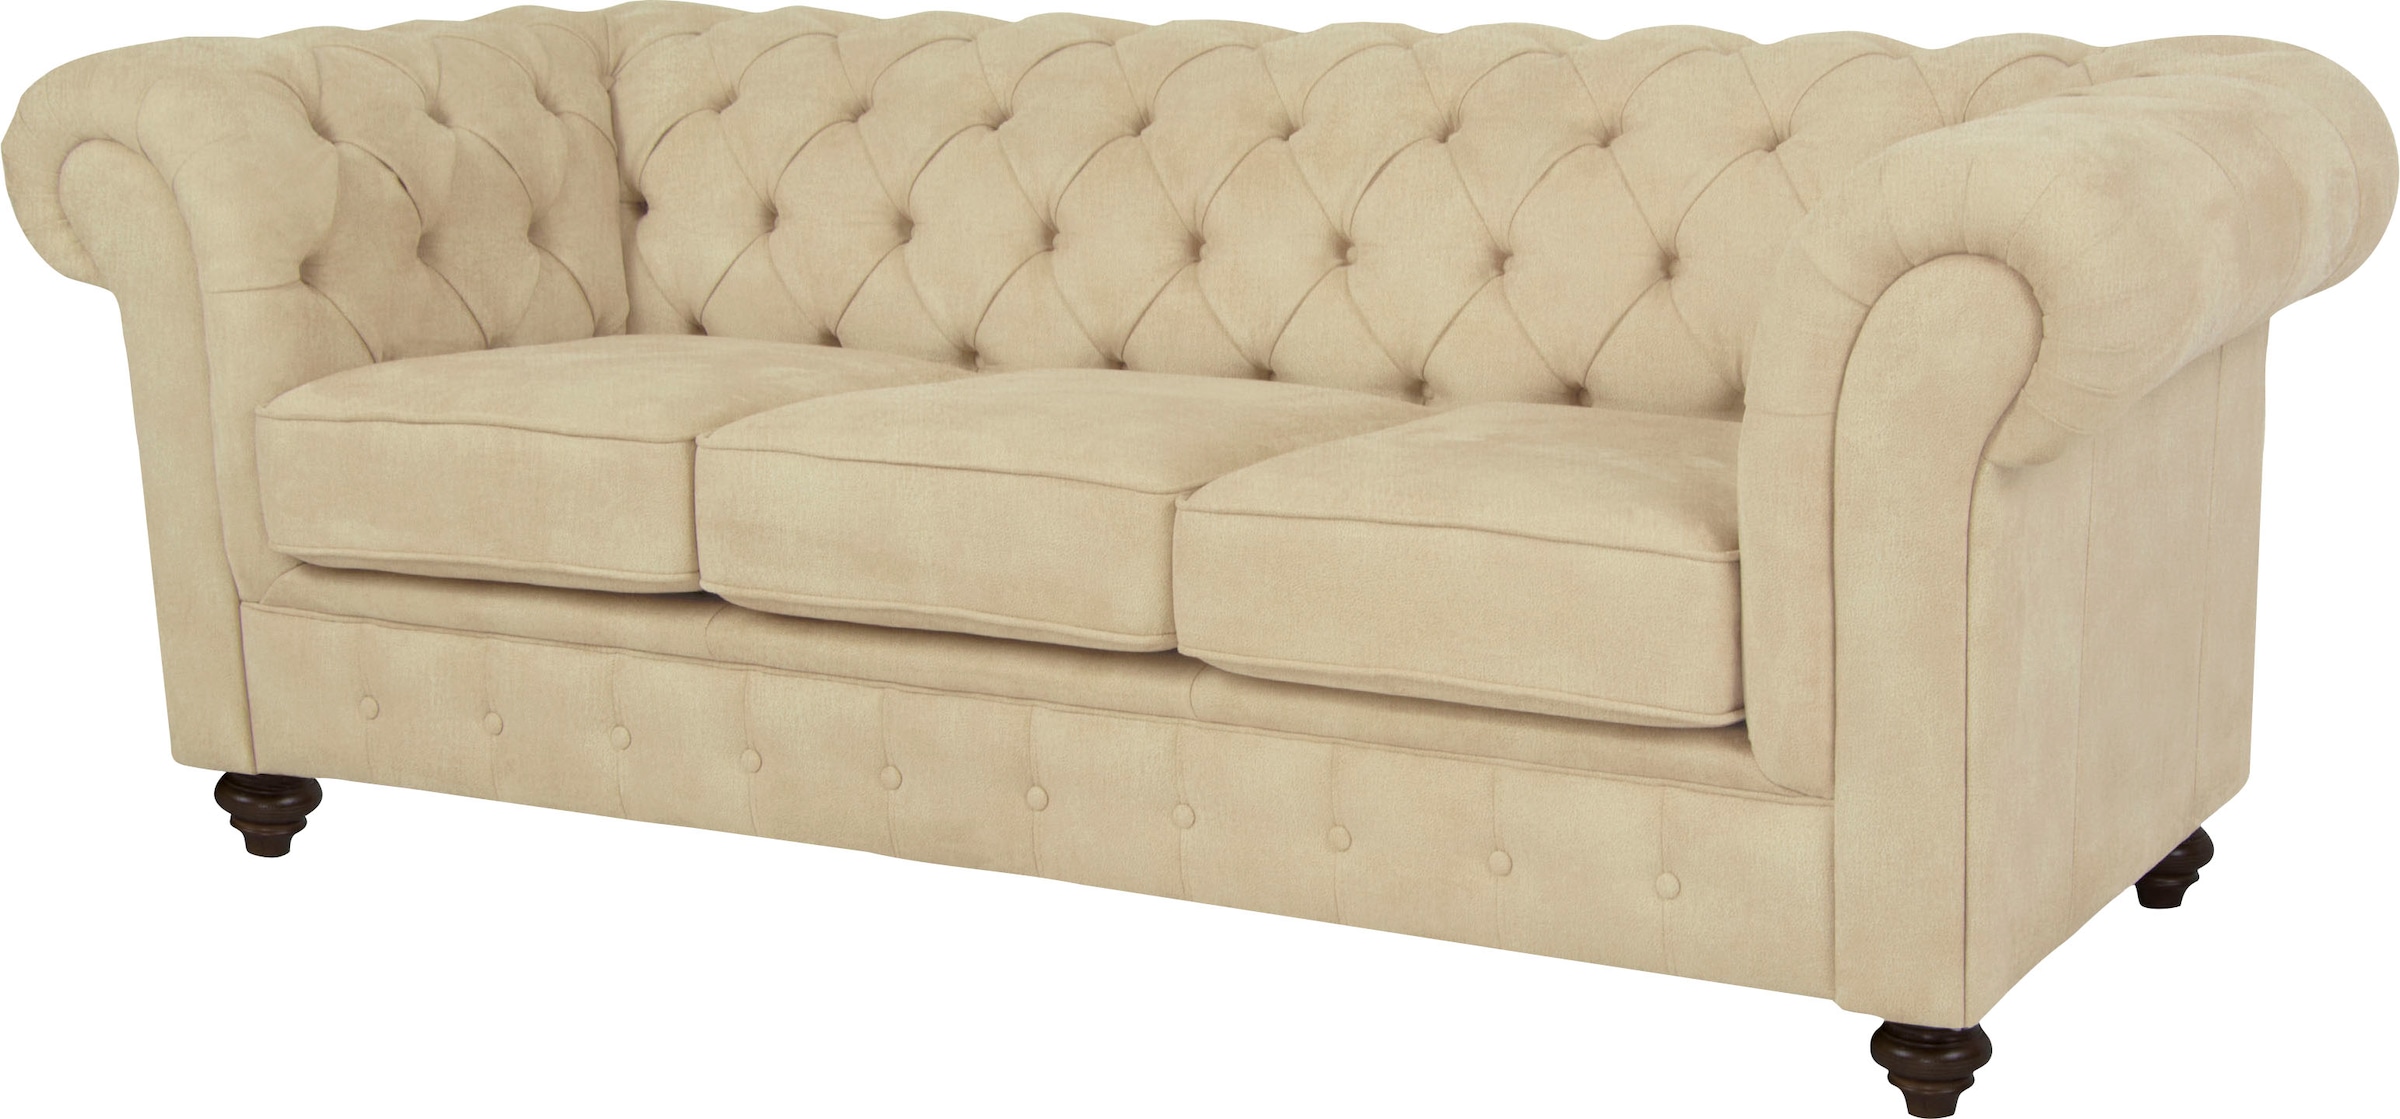 Home affaire Chesterfield-Sofa »Duc 3-Sitzer«, hochwertige Knopfheftung im Rücken, Samtoptik mit changierender Optik